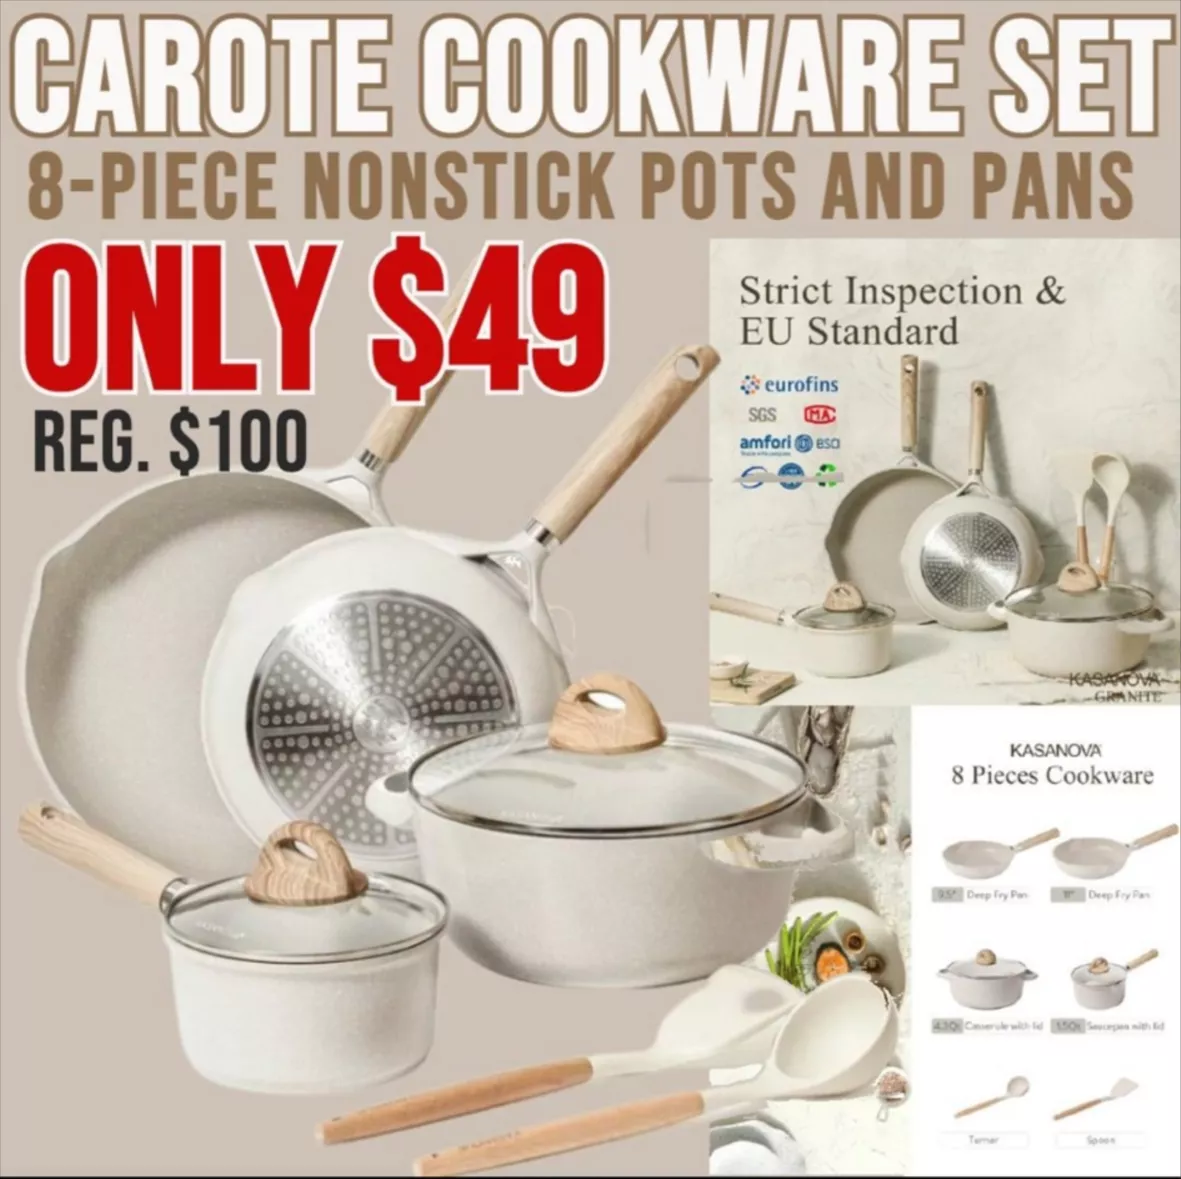 Carote Nonstick Pots and Pans Set, 8 Pcs Non Stick Cookware Set